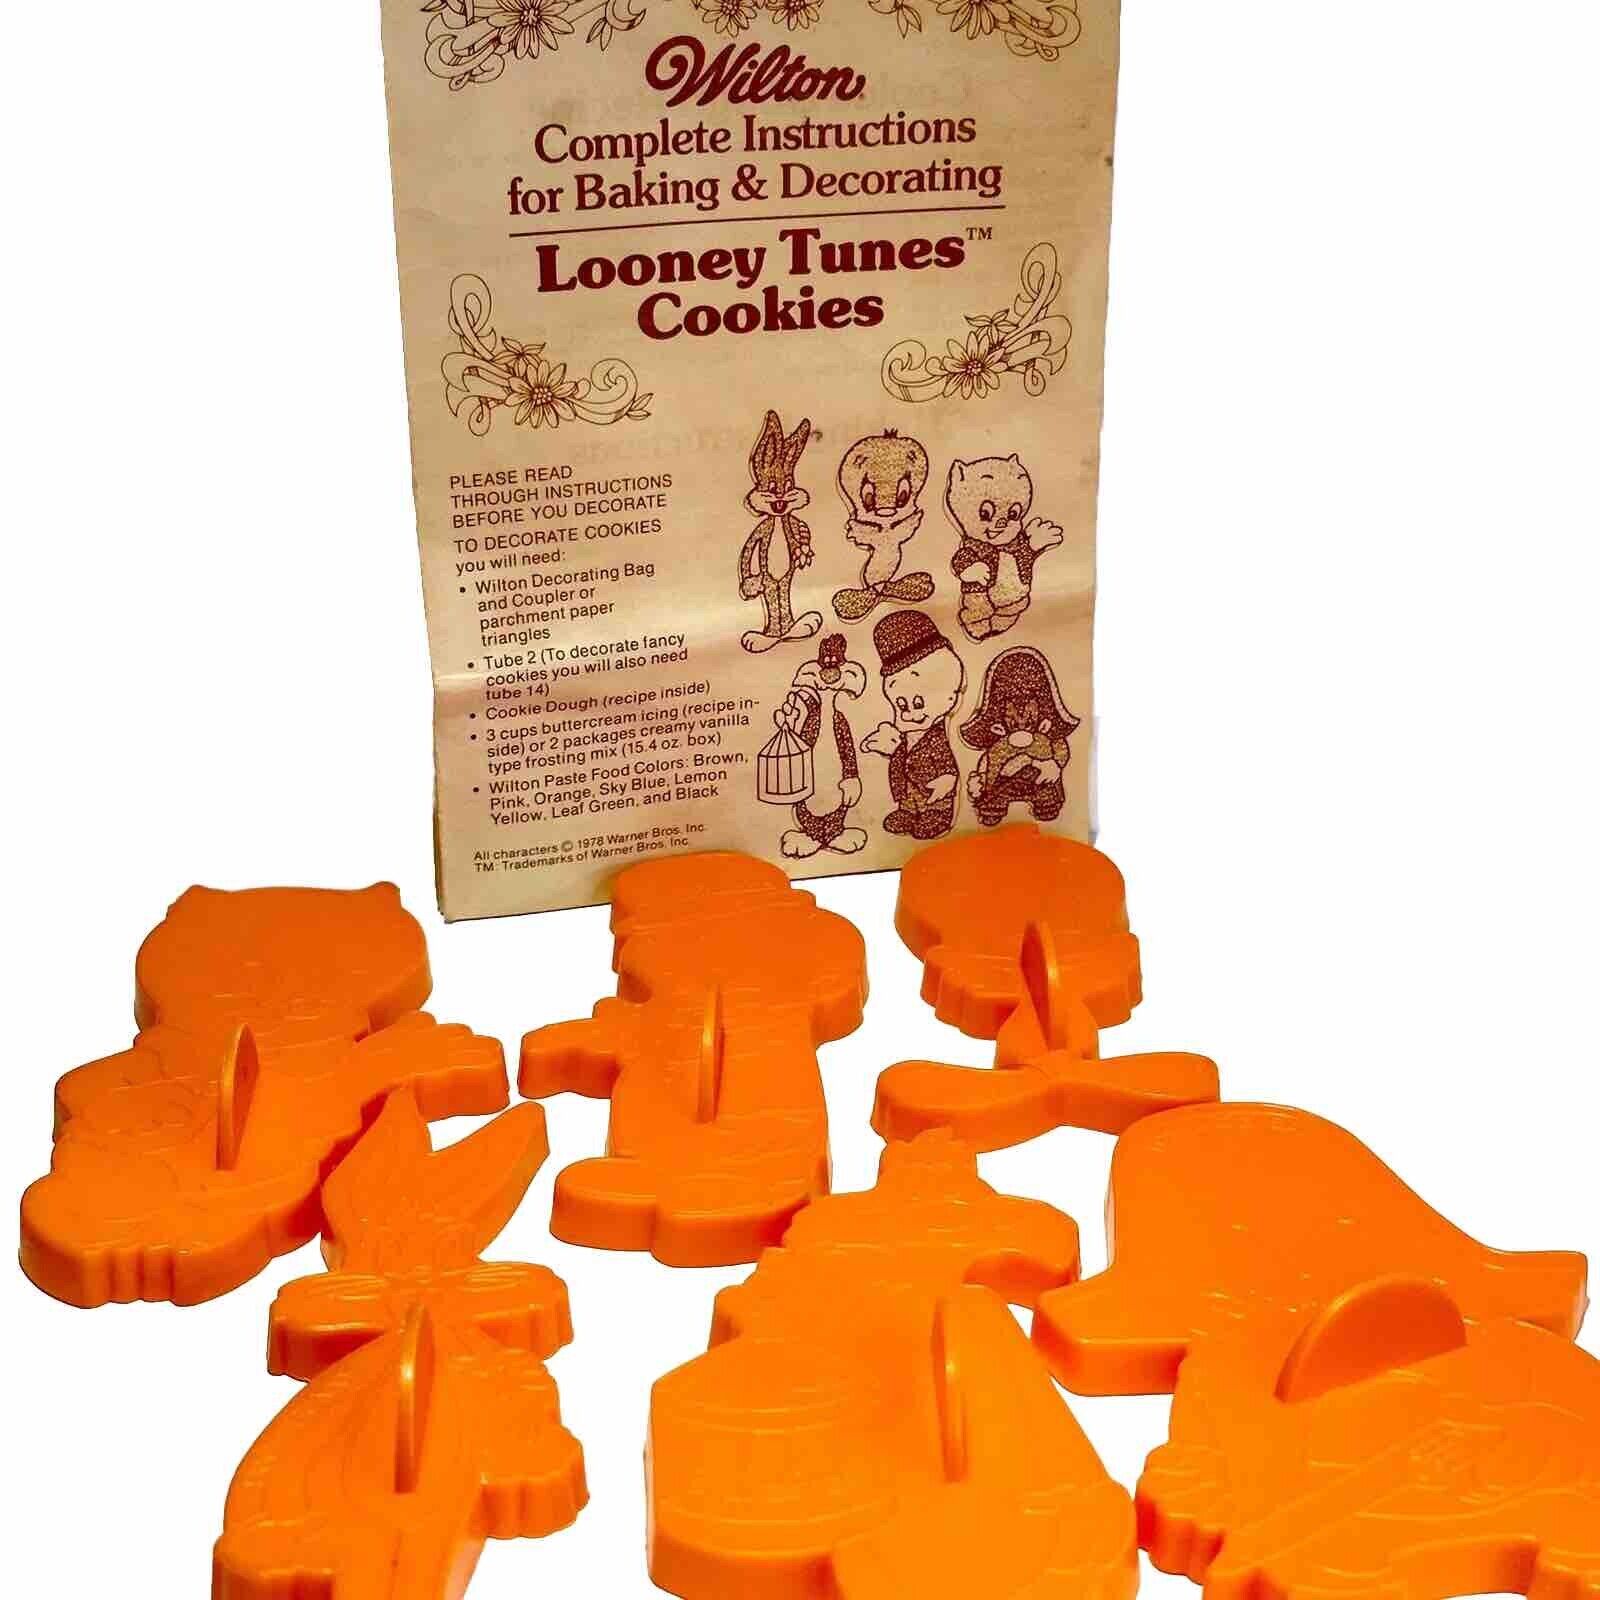 6 Warner Brothers Looney Tunes Cookie Cutters Complete Set Vintage 1978 Wilson